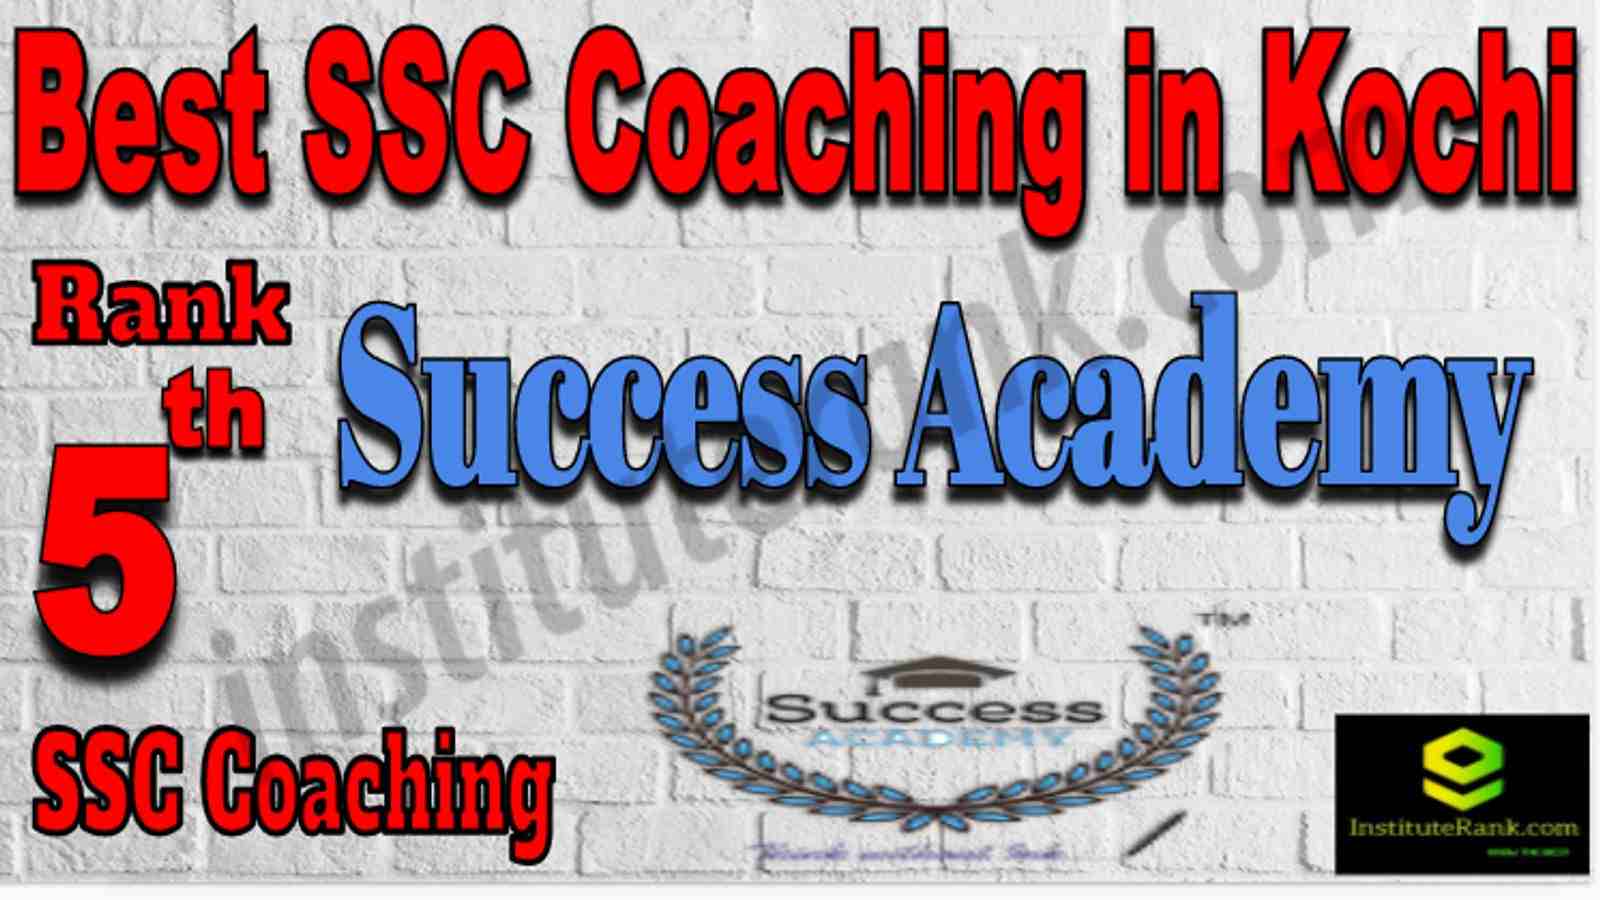 Rank 5 Best SSC Coaching in Kochi